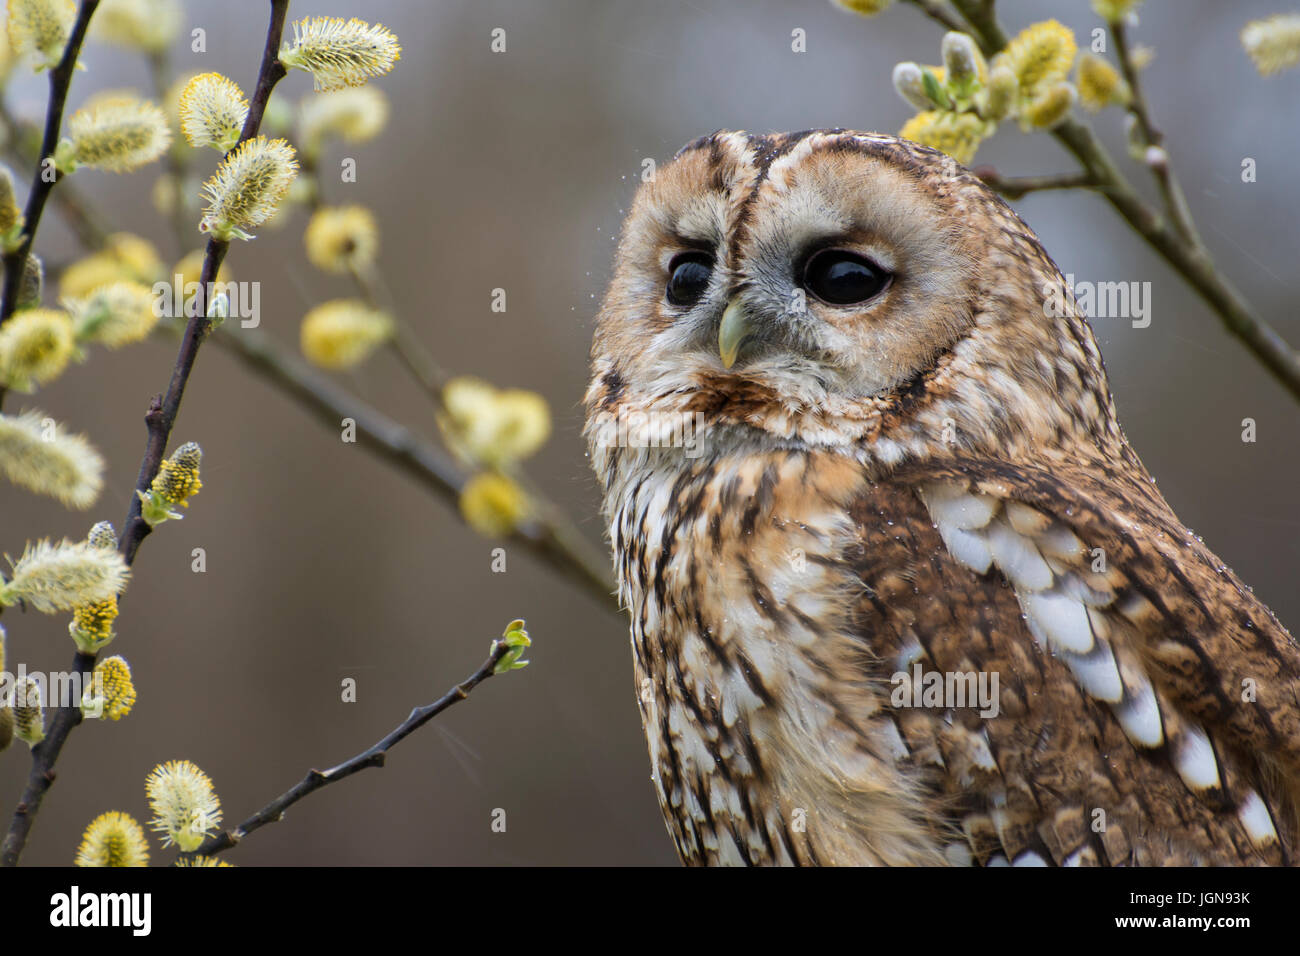 awny owl, Strix aluco - UK Stock Photo